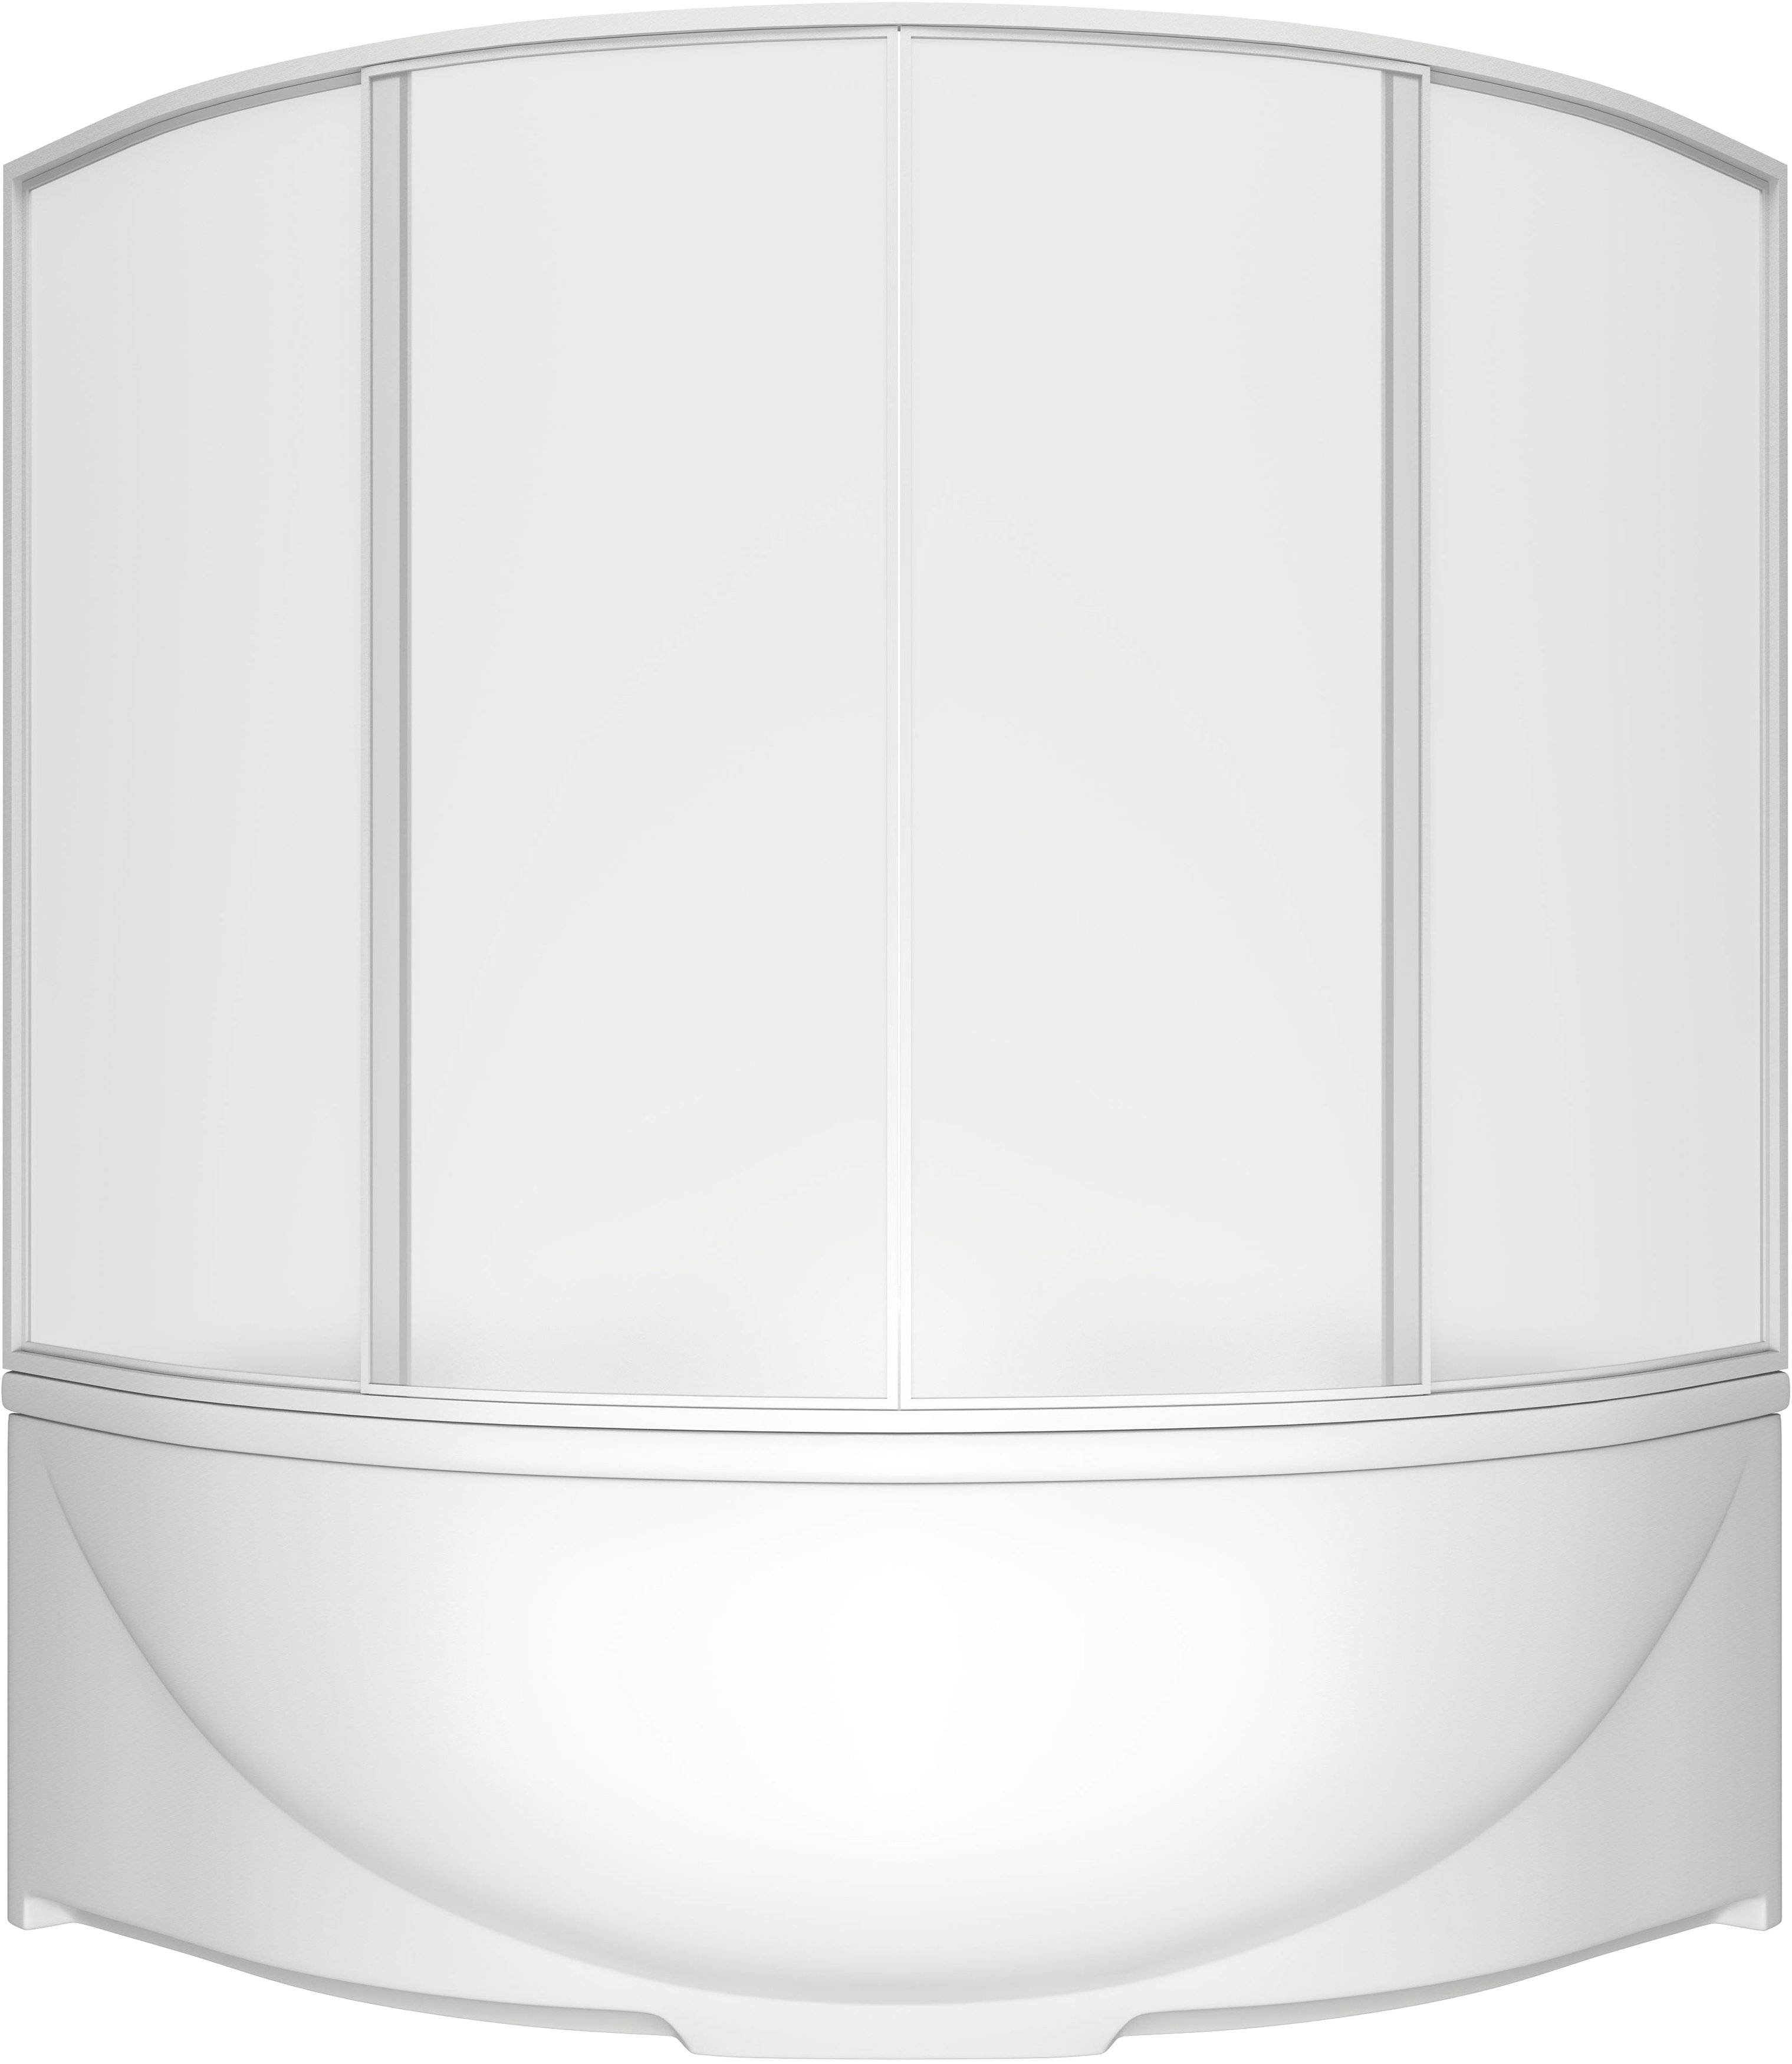 Акриловая ванна Bas Империал 150x150 см В 00012 - 3